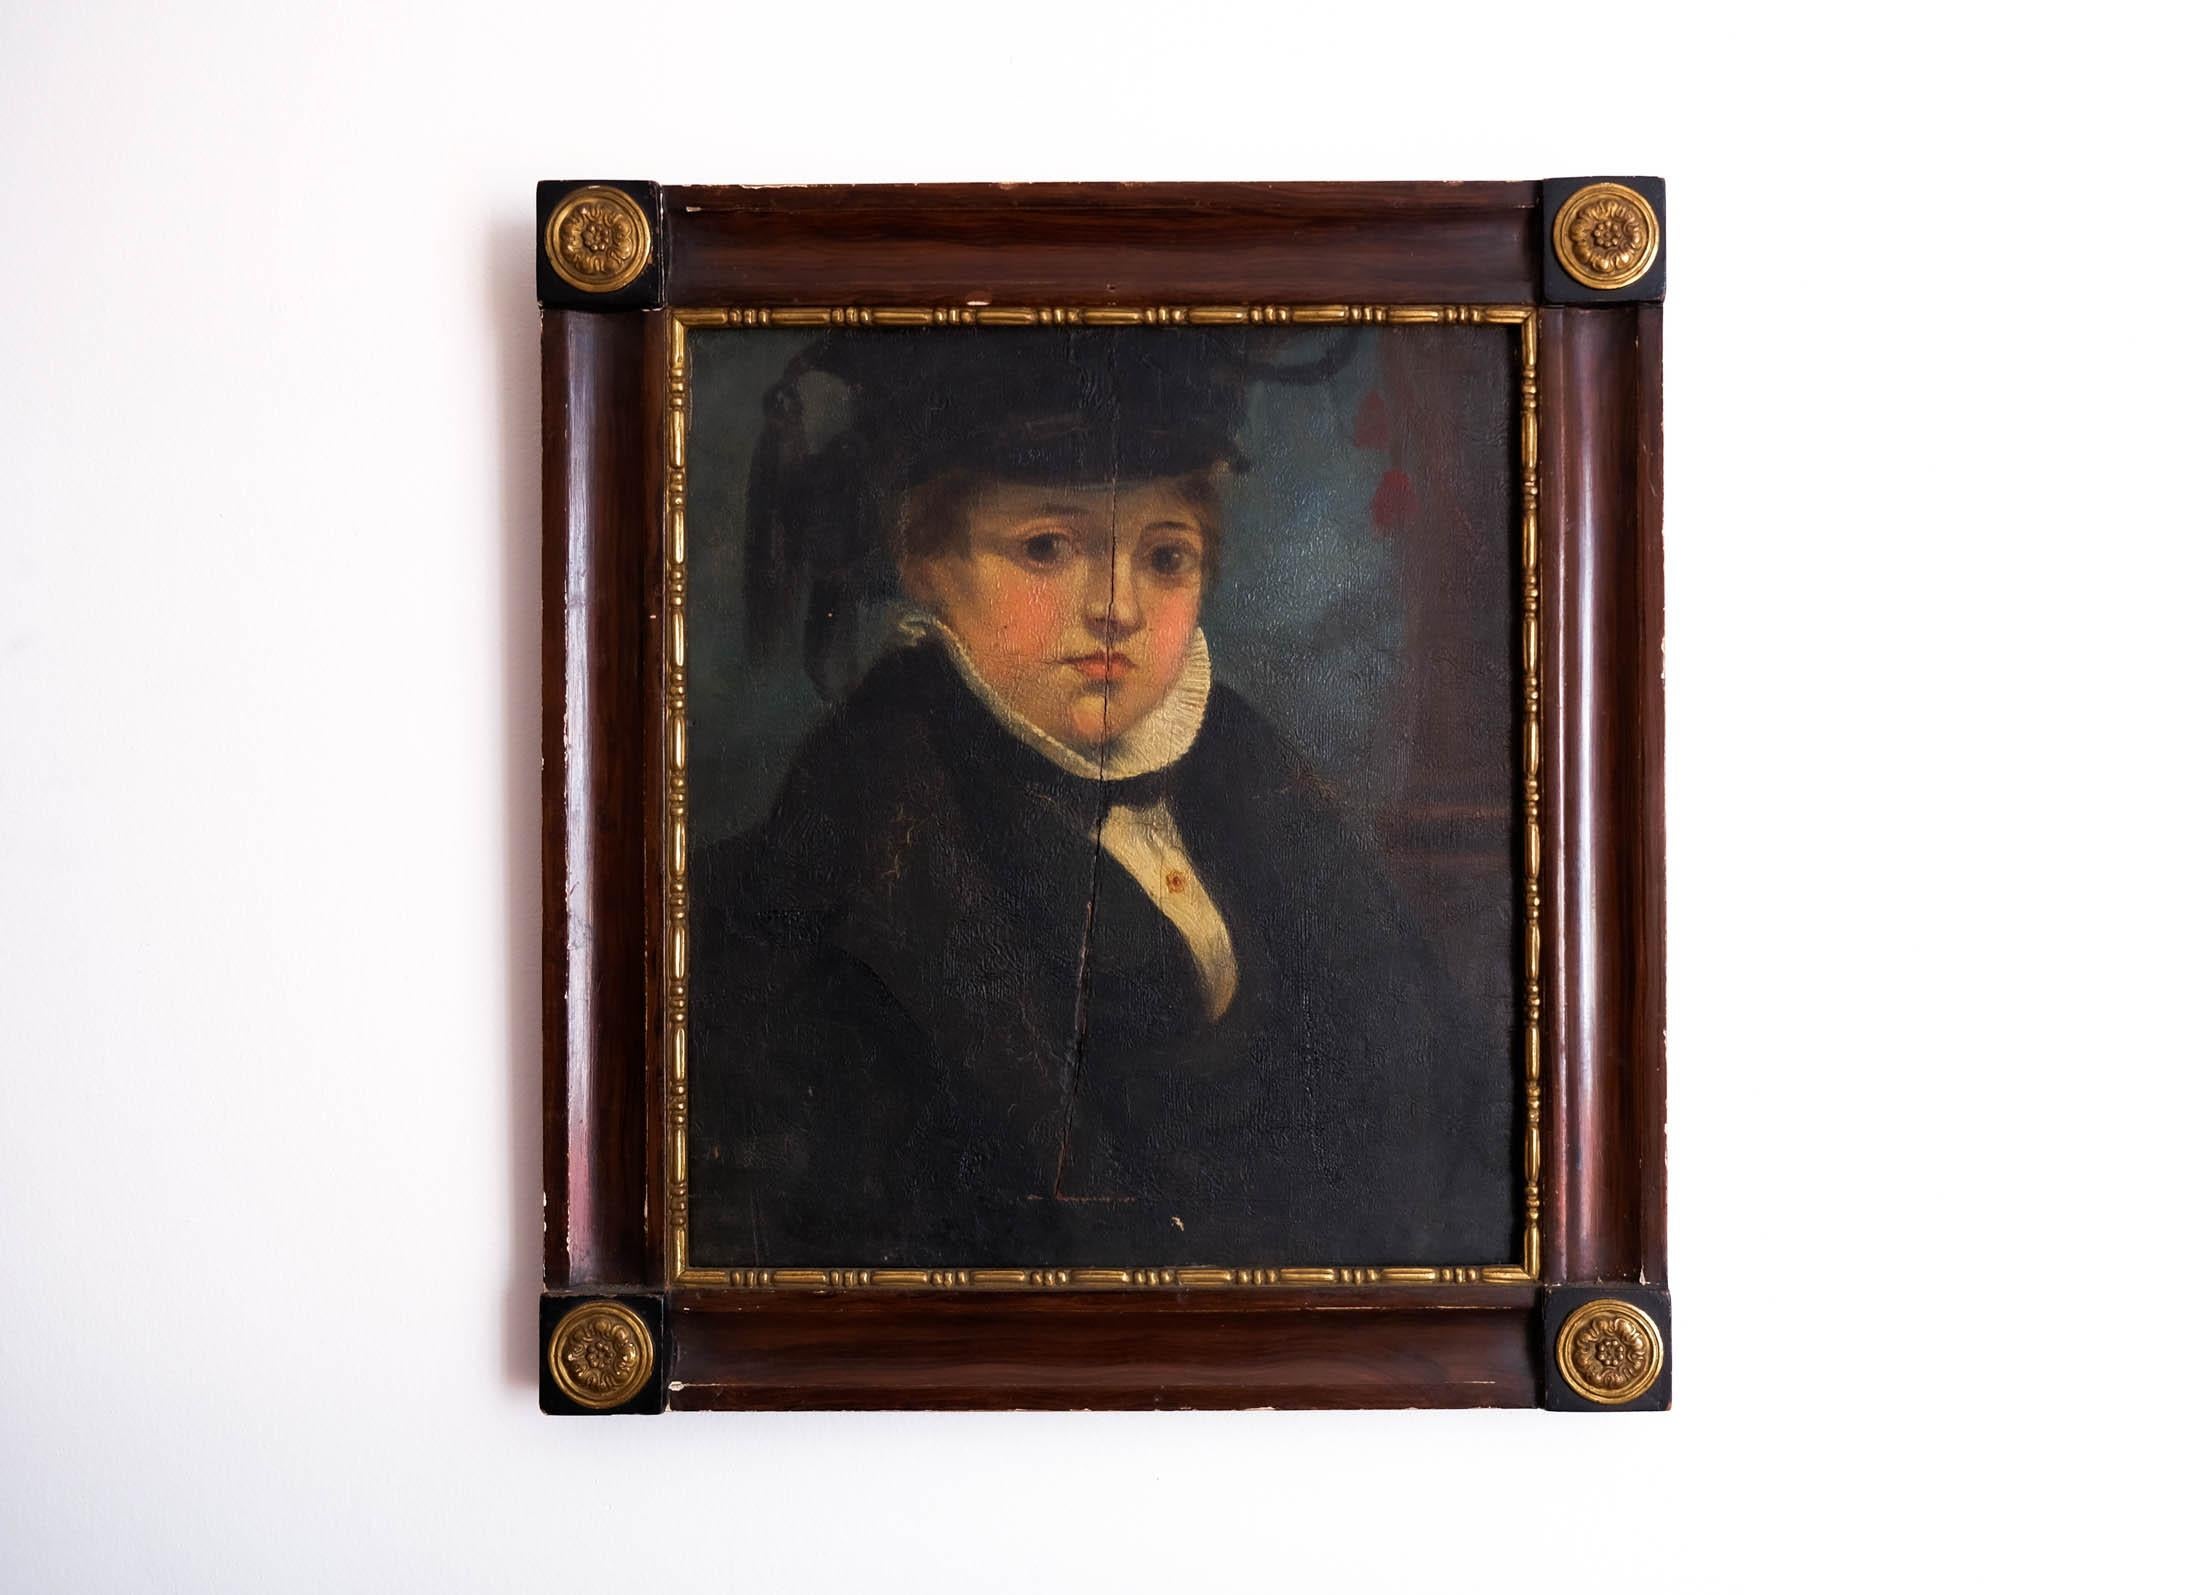 Zum Verkauf steht ein charmantes europäisches Porträtgemälde in Öl auf Karton aus dem späten 18. und frühen 19. Jahrhundert, das eine jugendliche Person, möglicherweise einen Gelehrten, darstellt und vermutlich in den 1820er Jahren gemalt